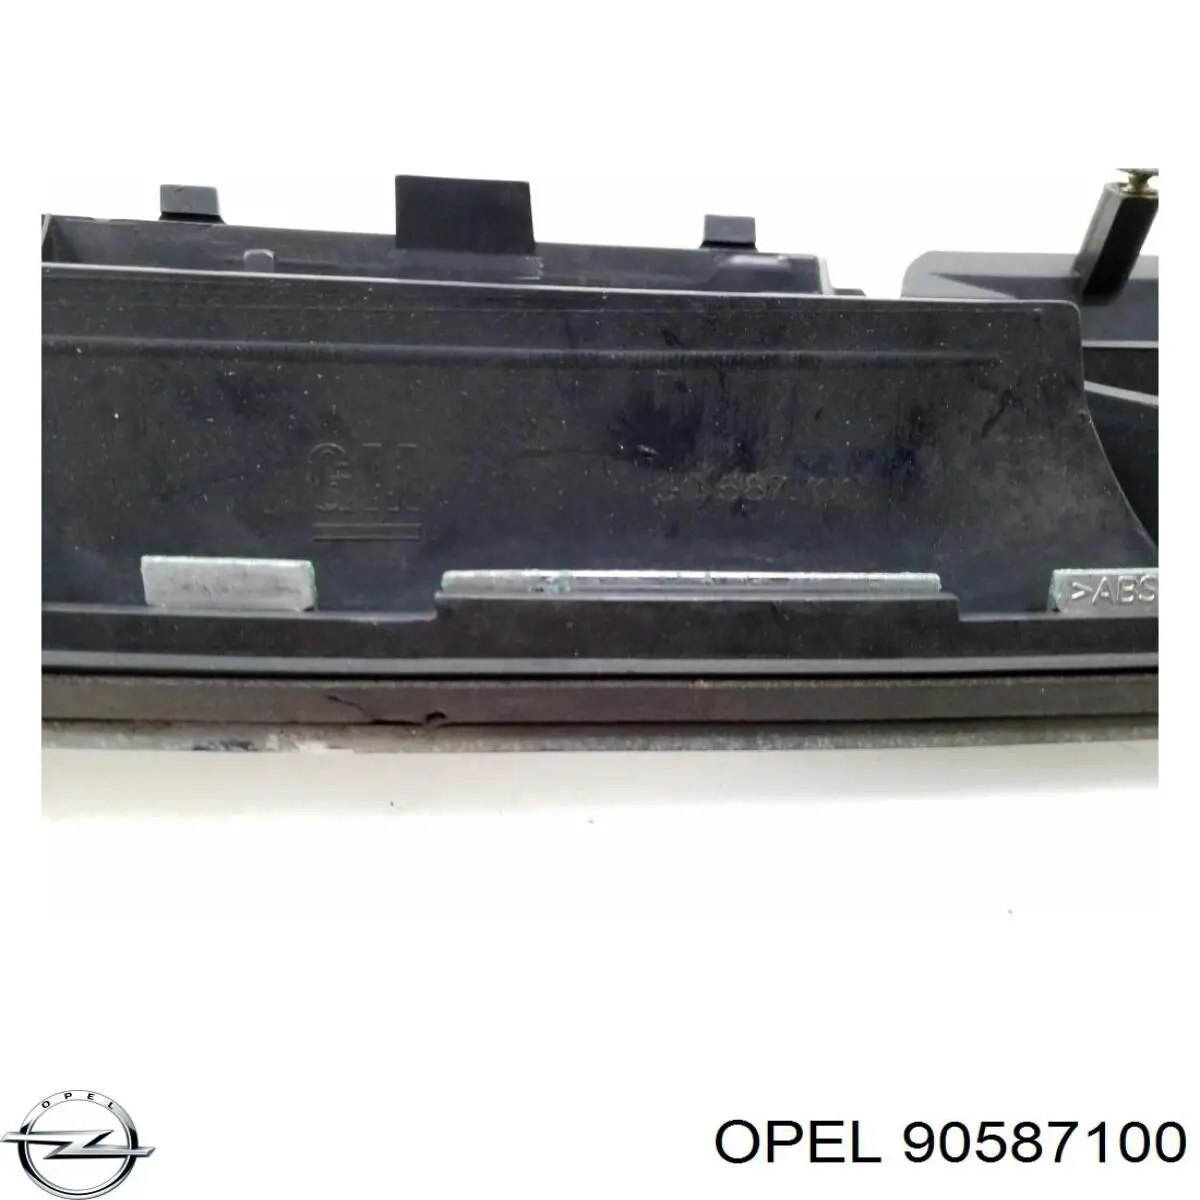 90587100 Opel rejilla de radiador